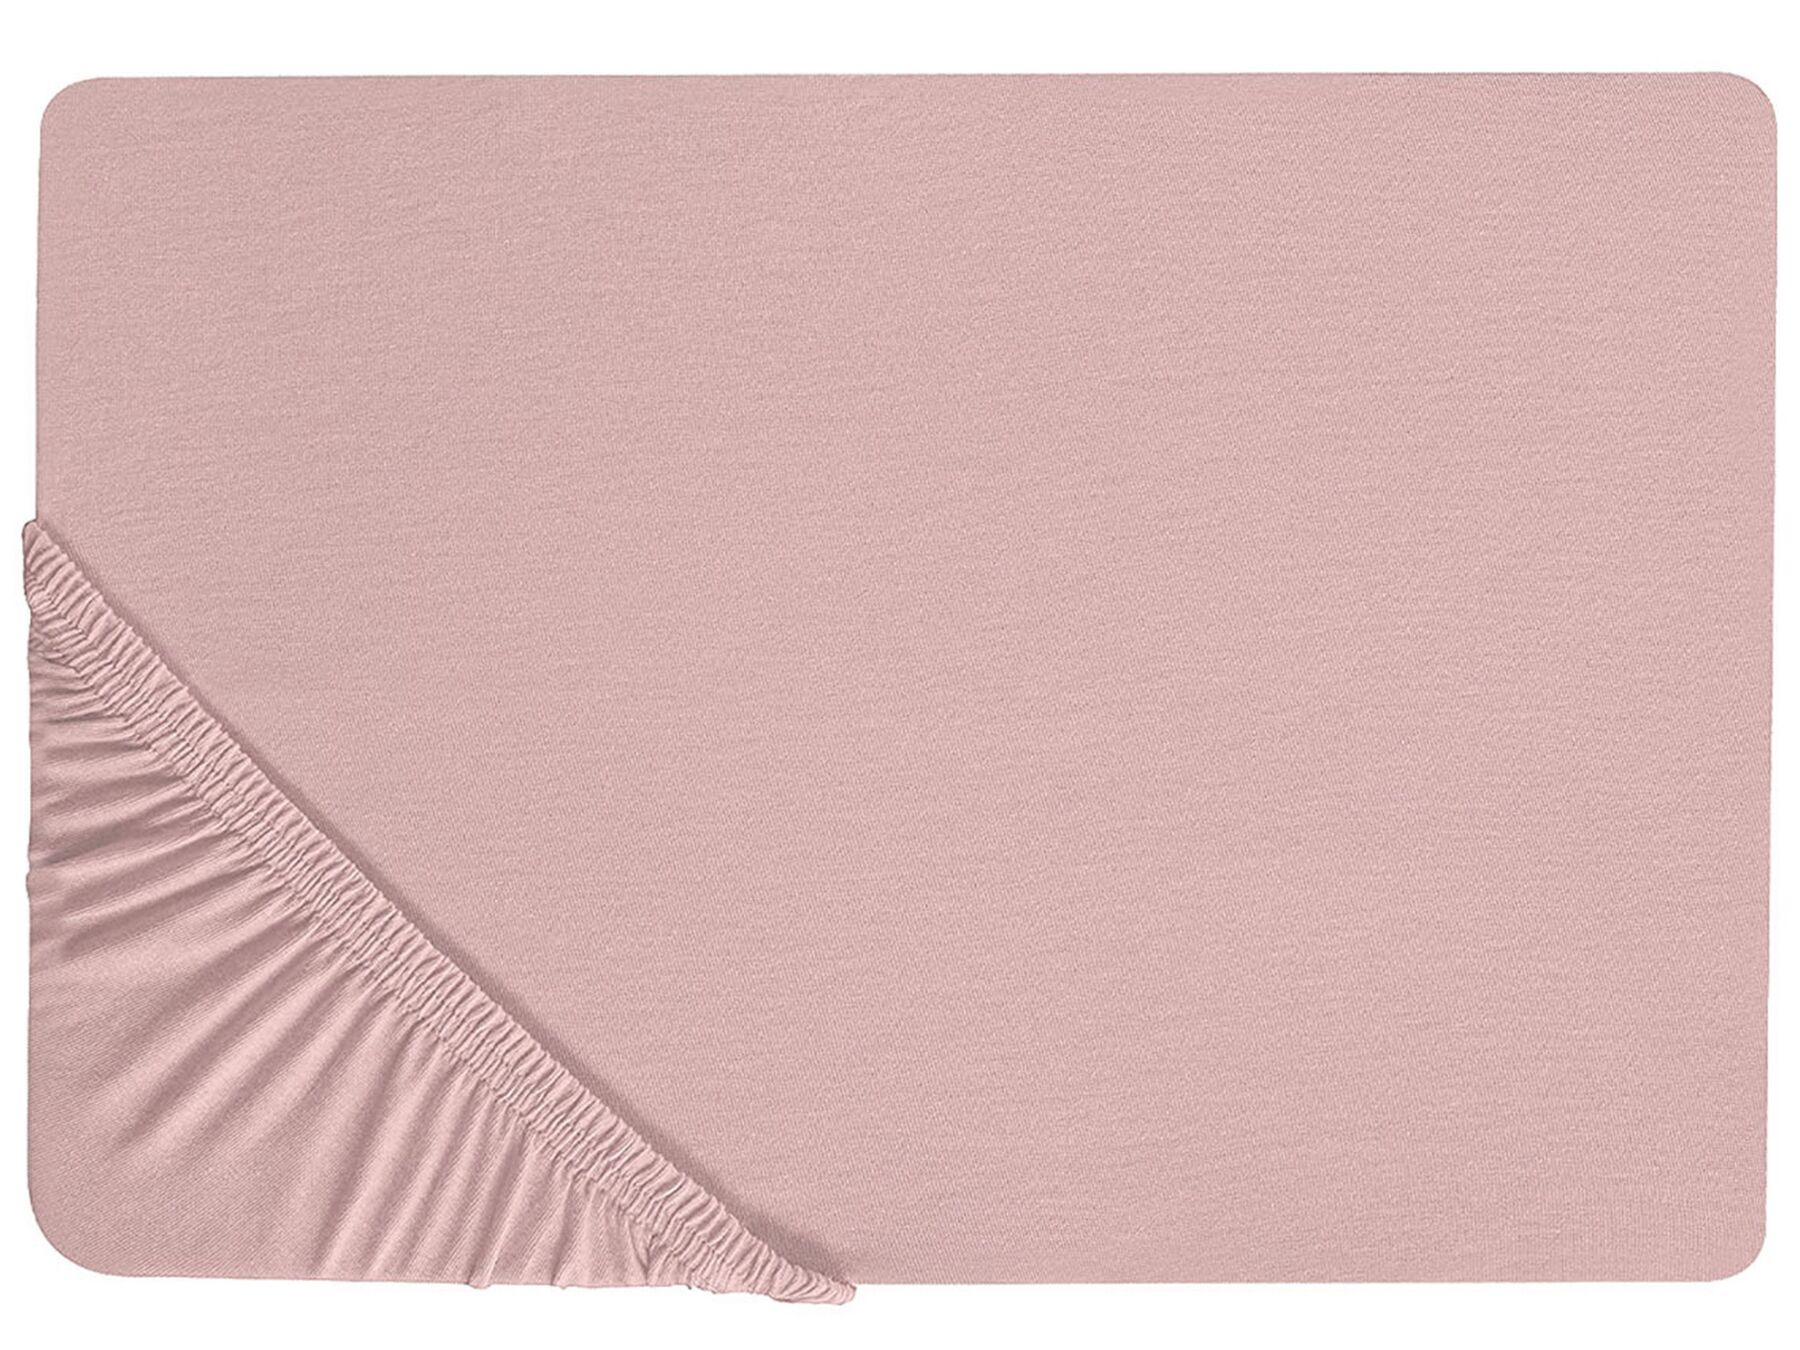 Rózsaszín pamut gumis lepedő 200 x 200 cm HOFUF_815940